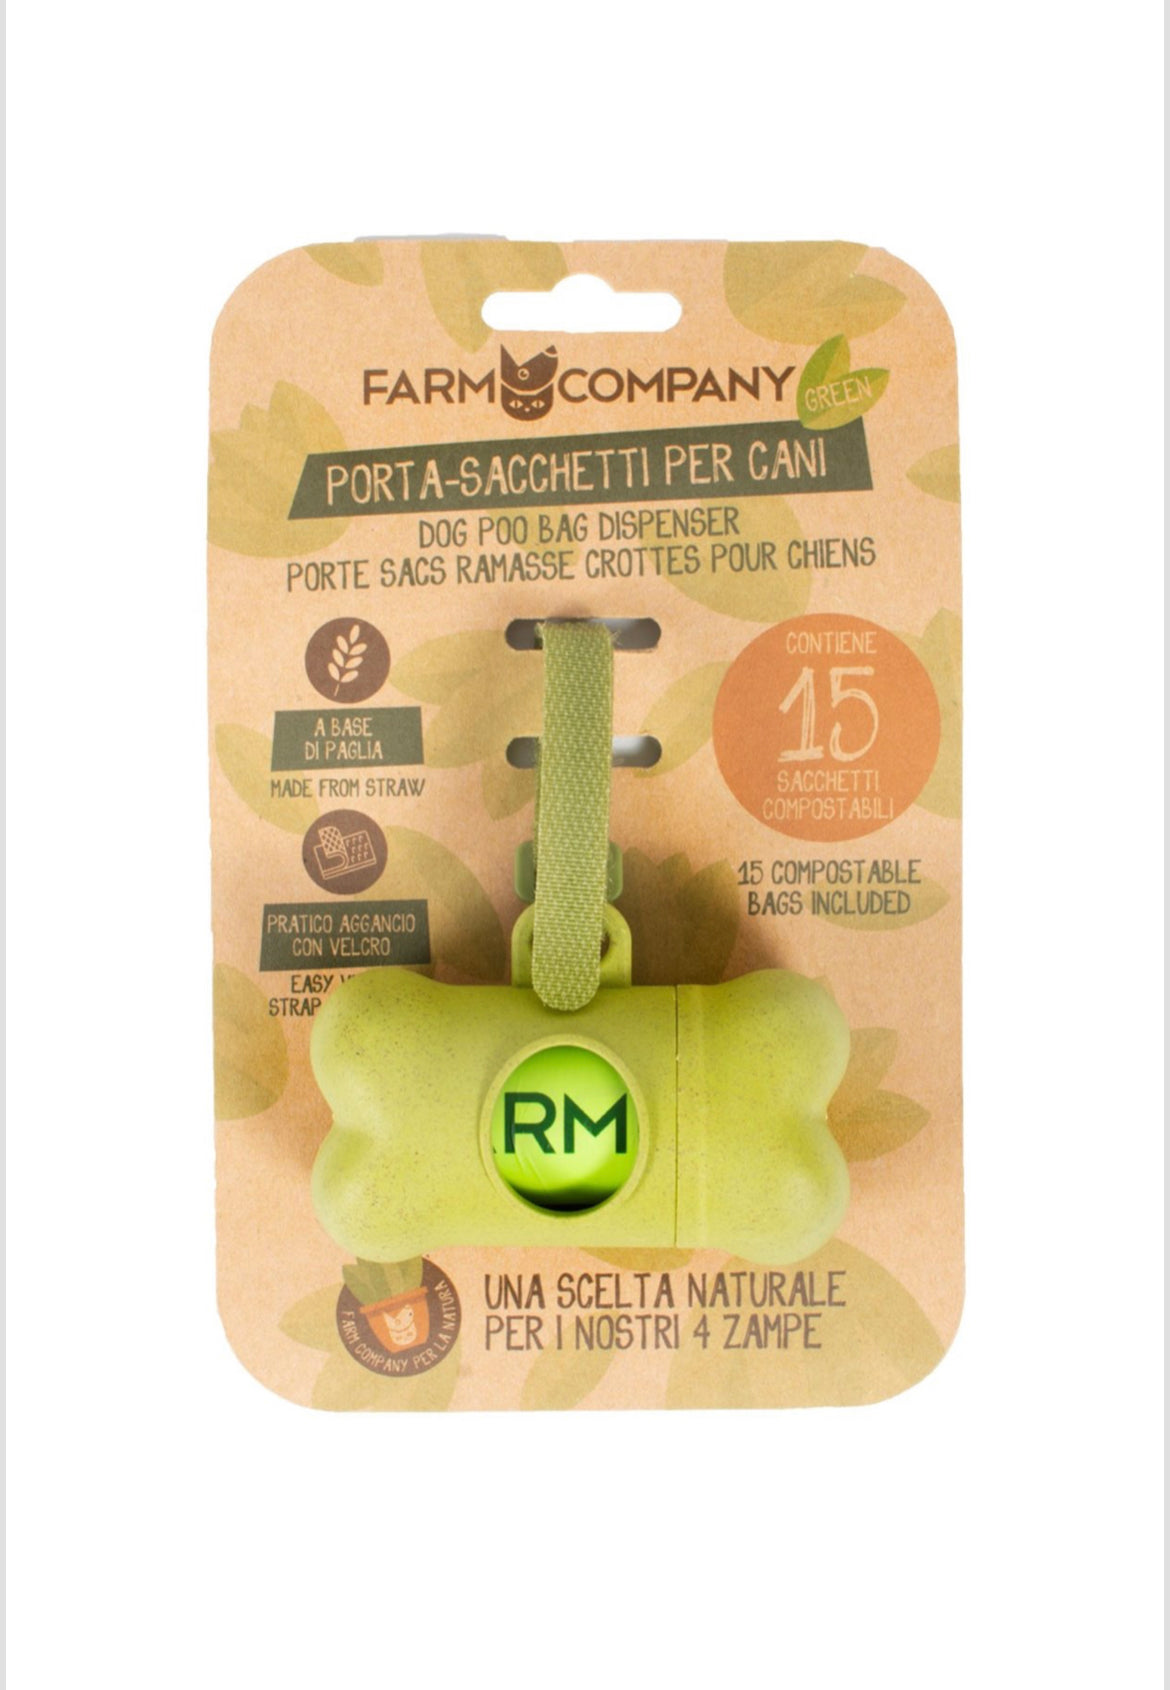 Porta Sacchetti “Biodegradabile” - Farm Company